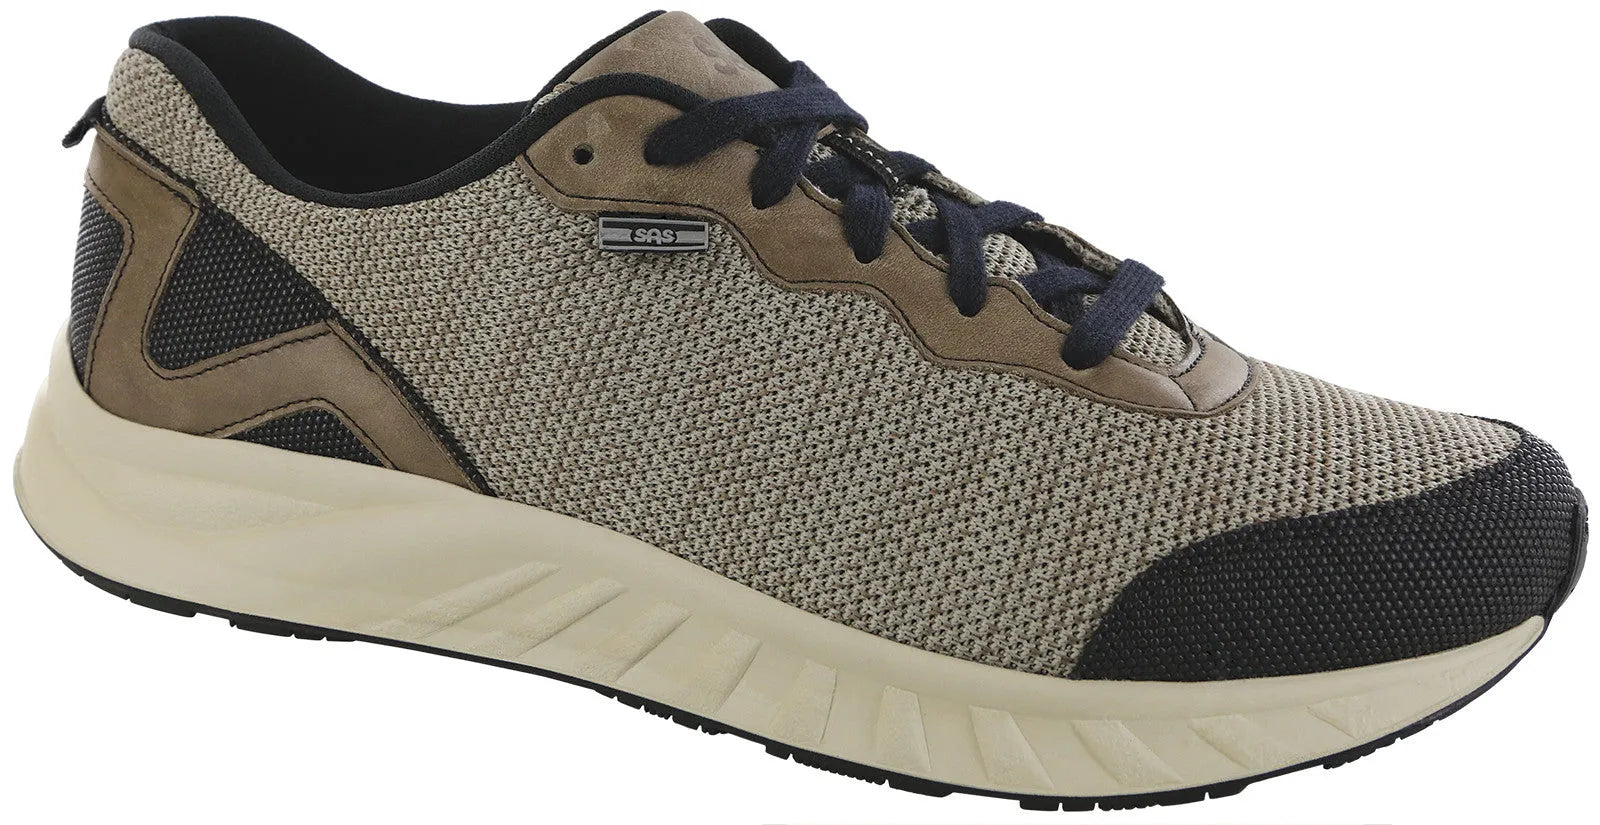 Men's Water-Resistant Work Sneakers - Pebble San Antonio Shoes